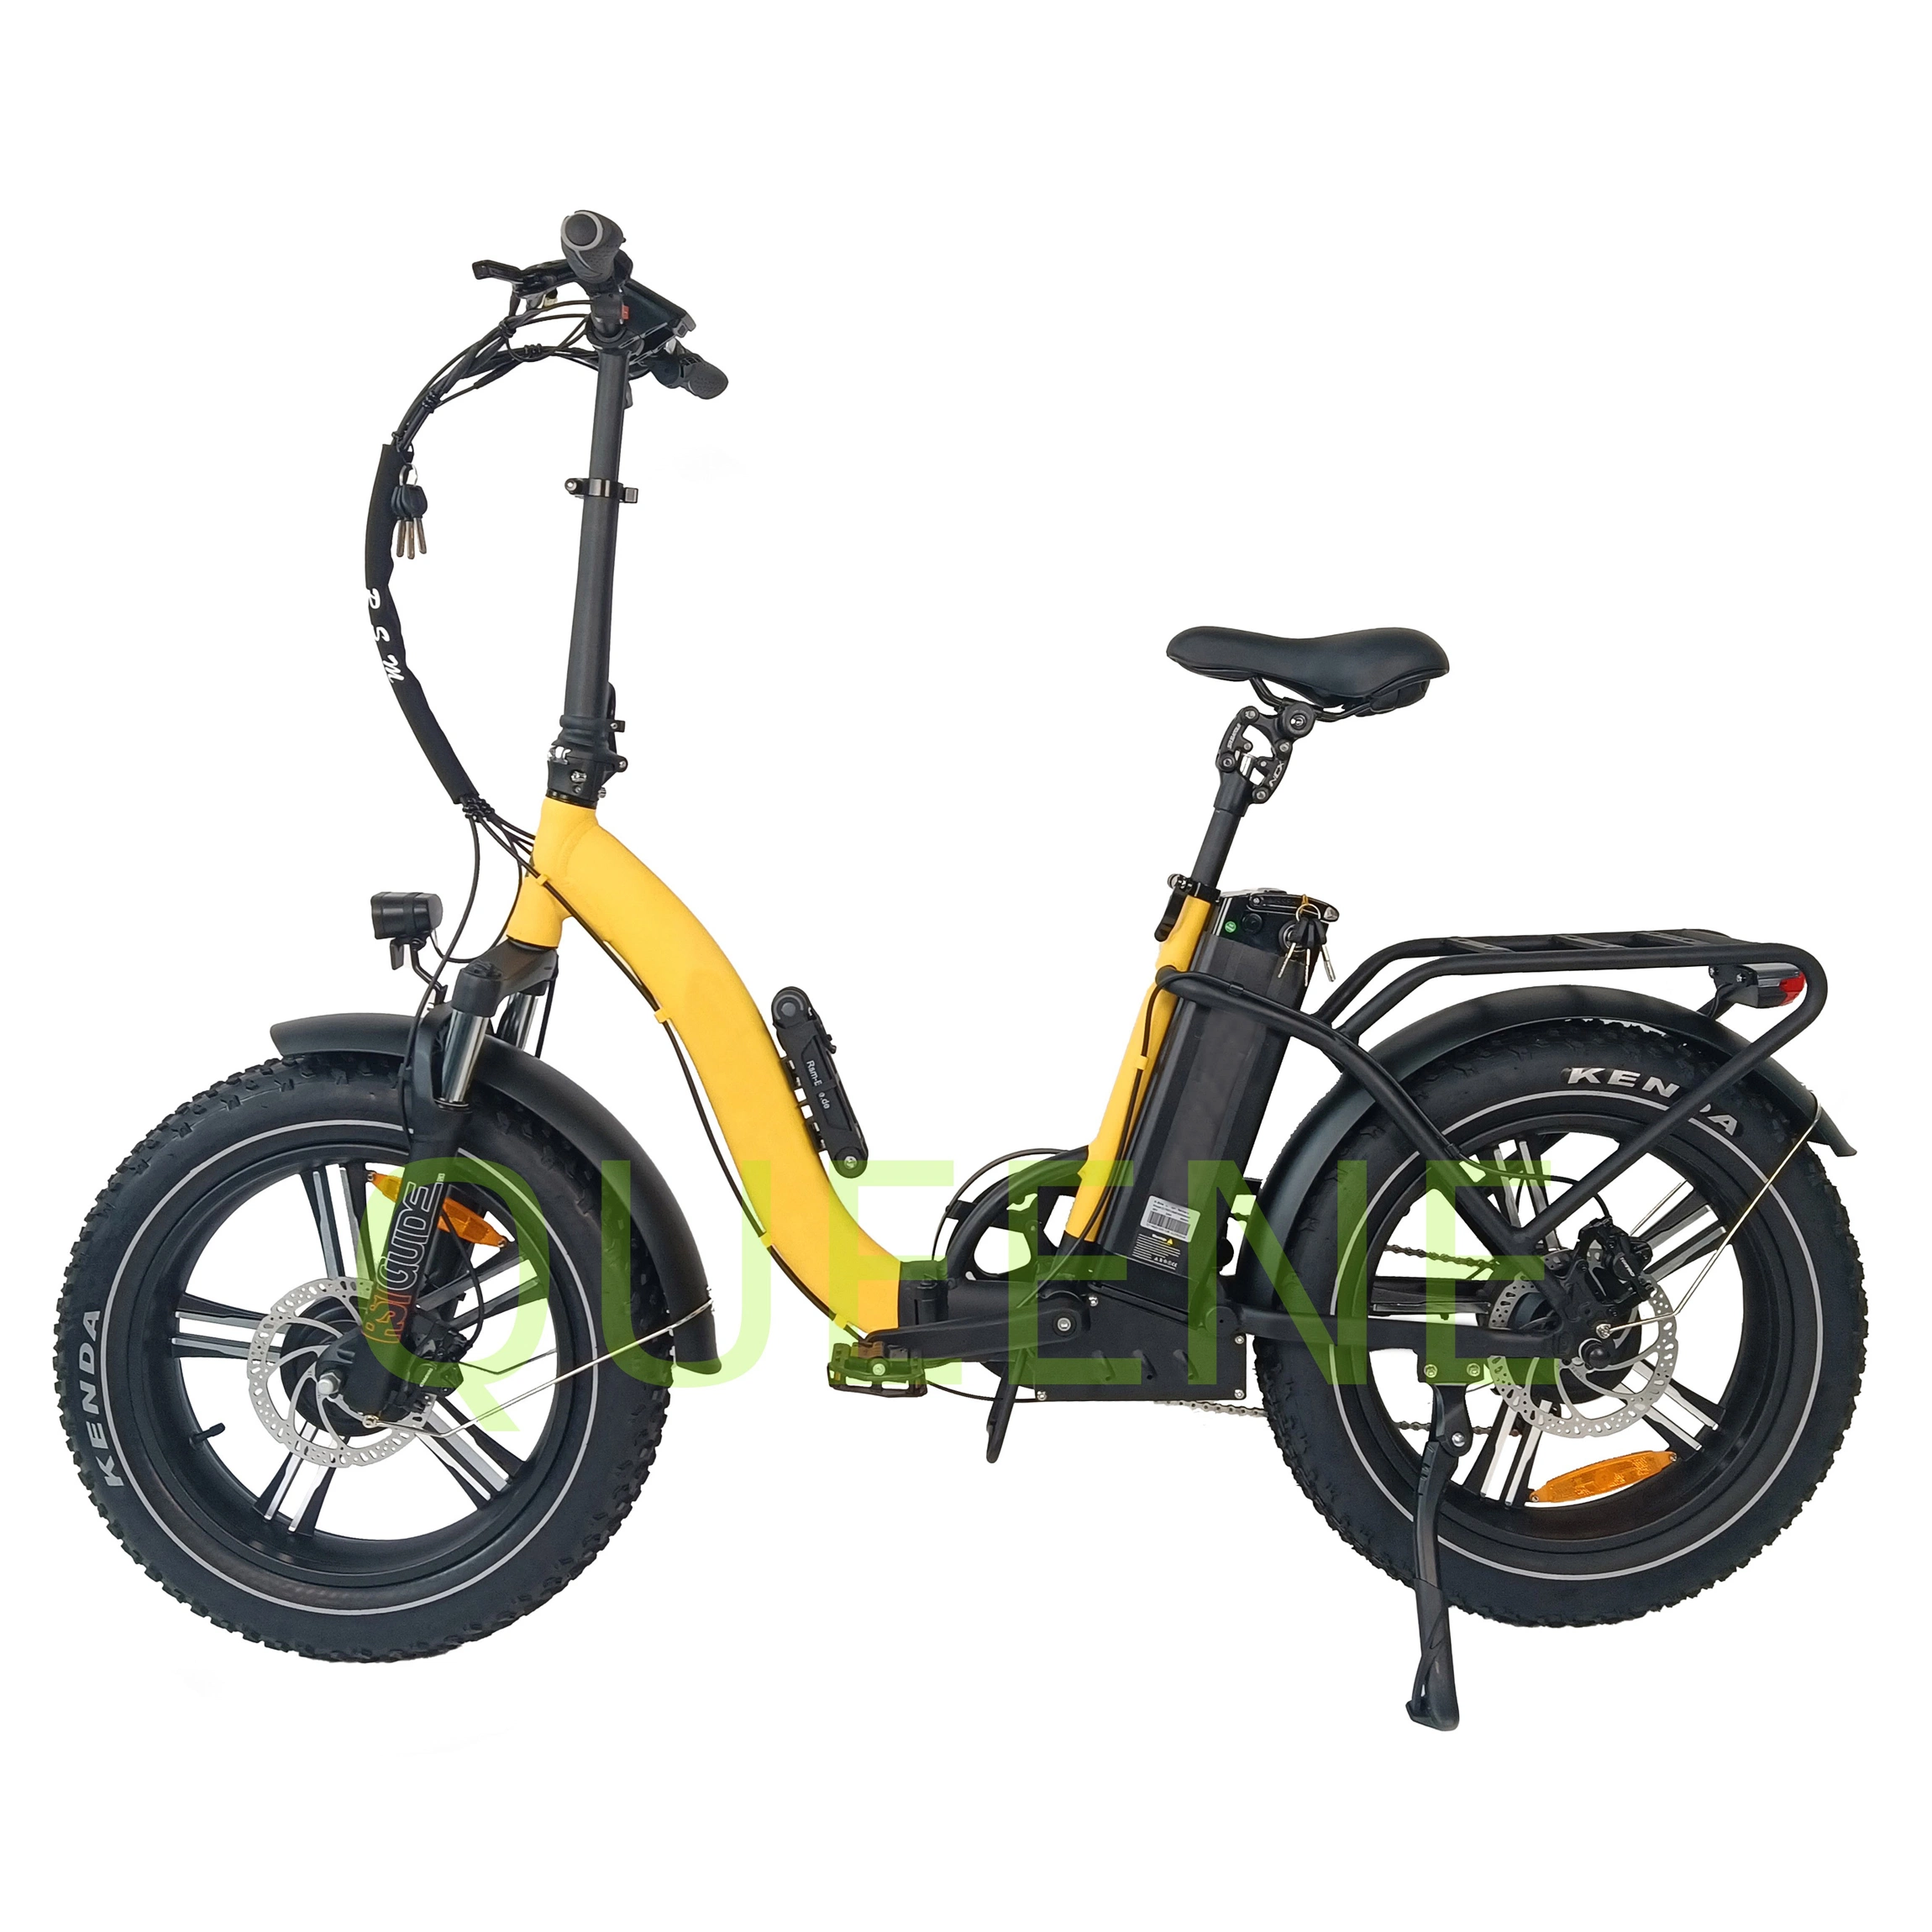 Los niños de la familia Queene/ Entrega de carga E E-Carga Ebike bicicletas E-Bici Bicicleta eléctrica